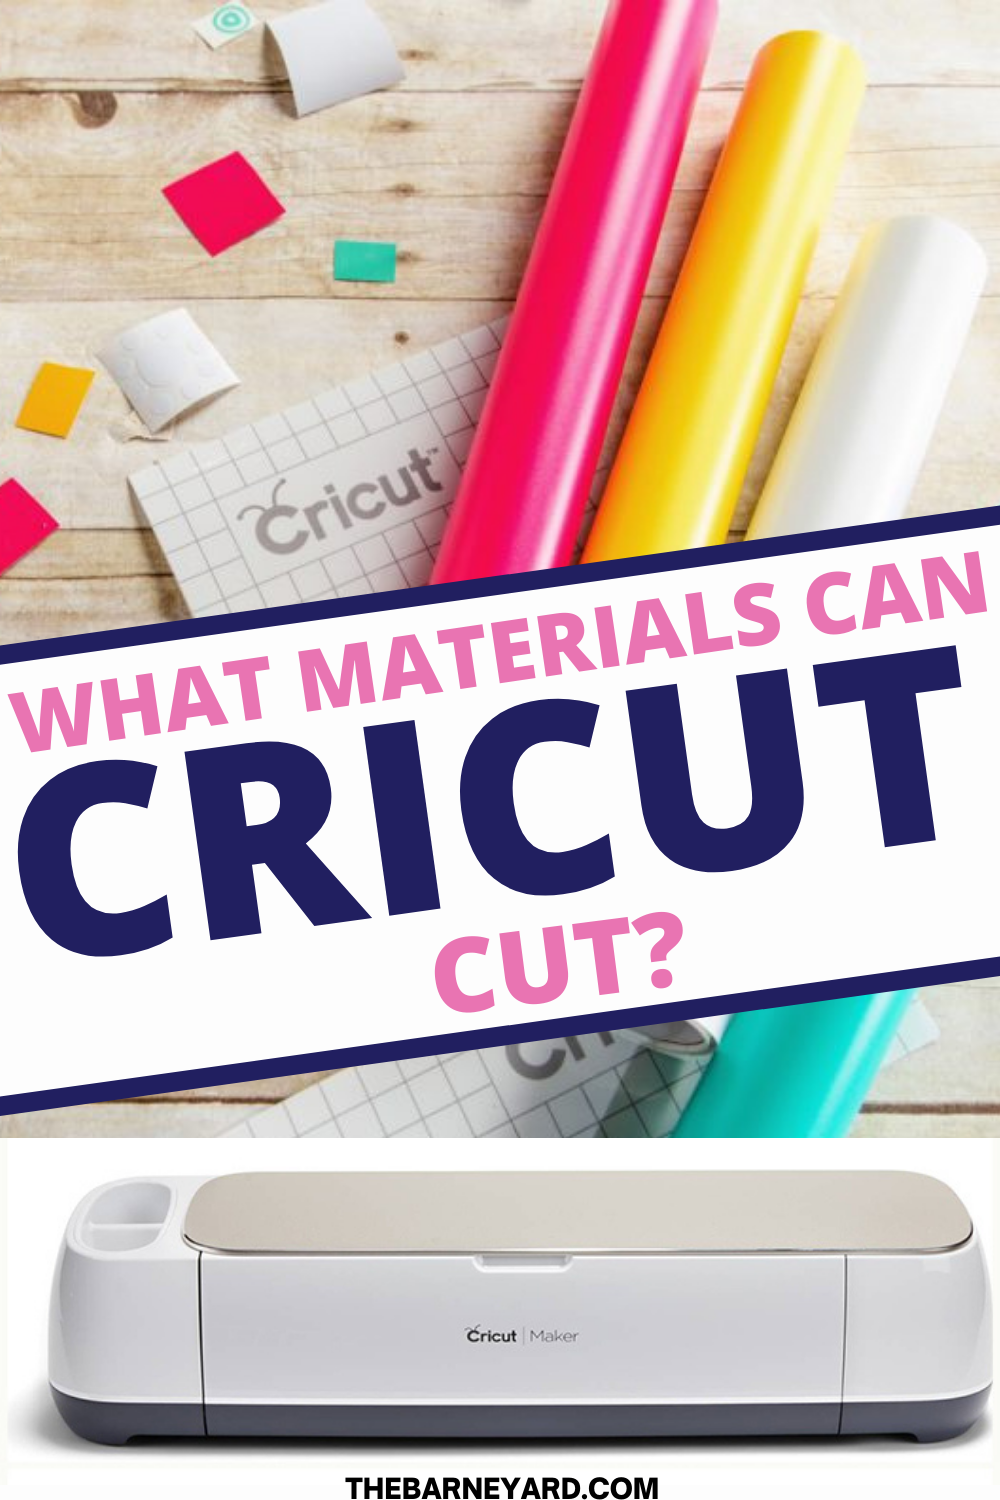 Materials cricut can cut